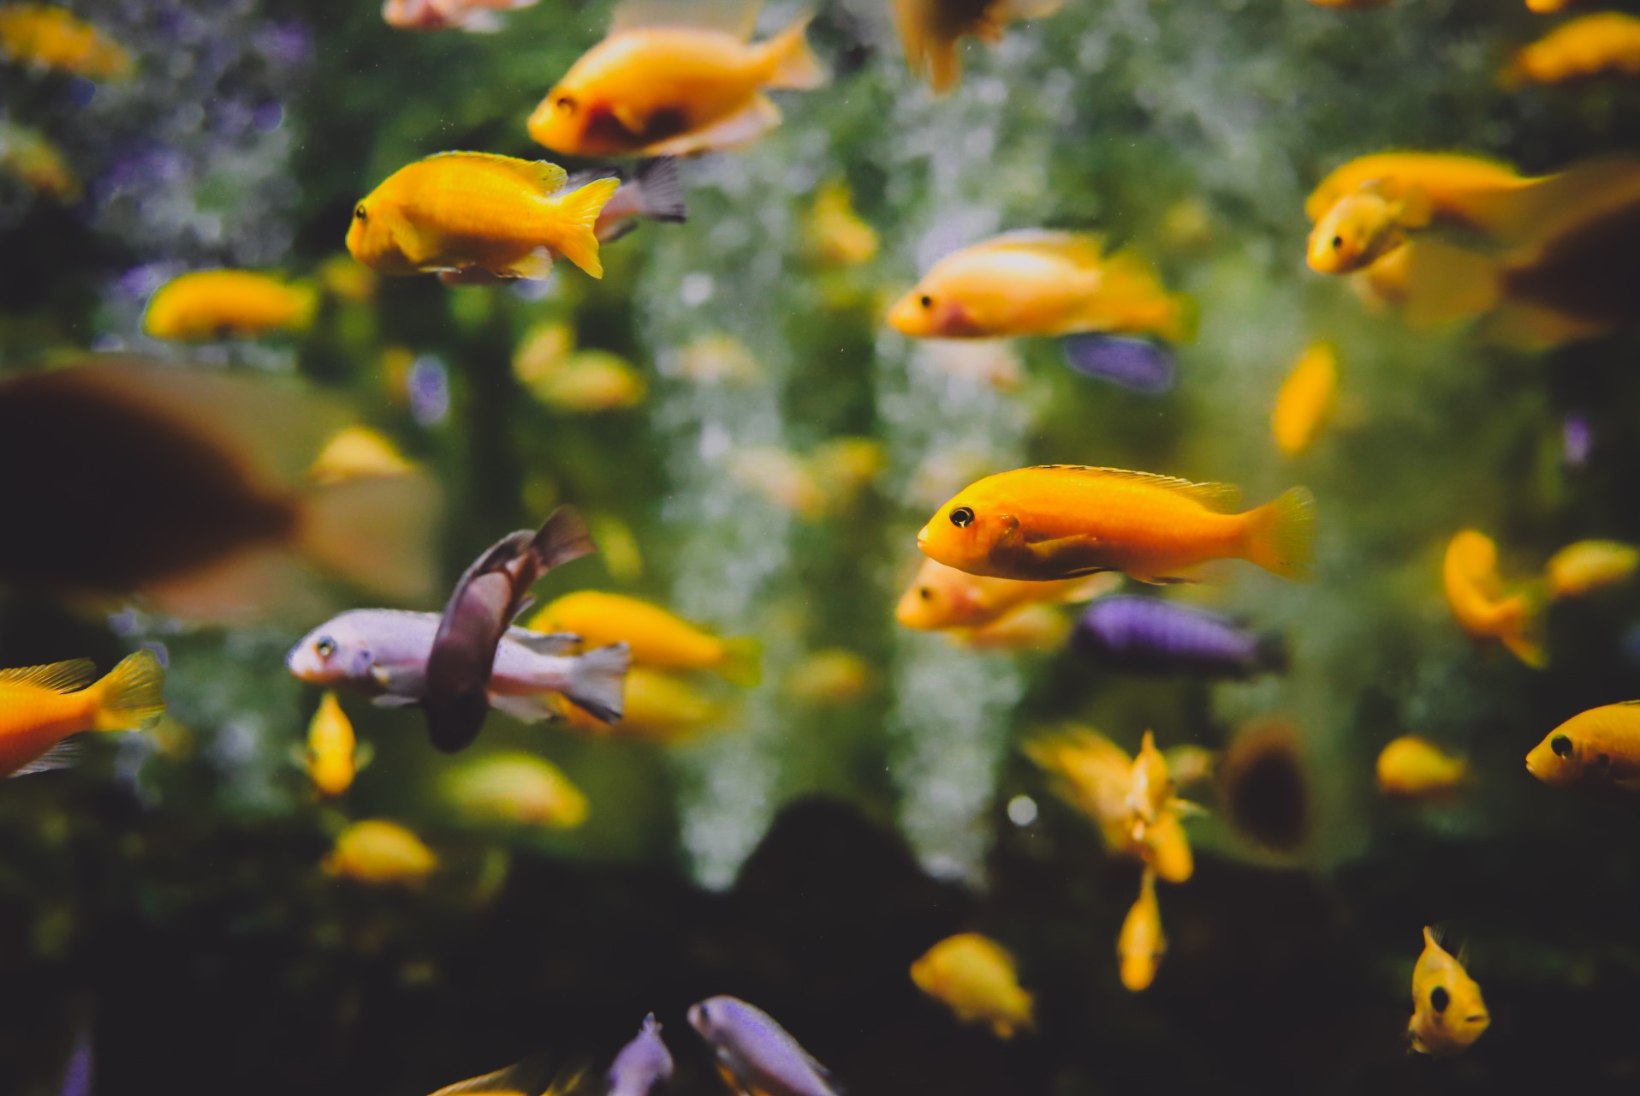 Kalad üksi kodus ehk Kuidas hoolitseda akvaariumi eest reisil olles?